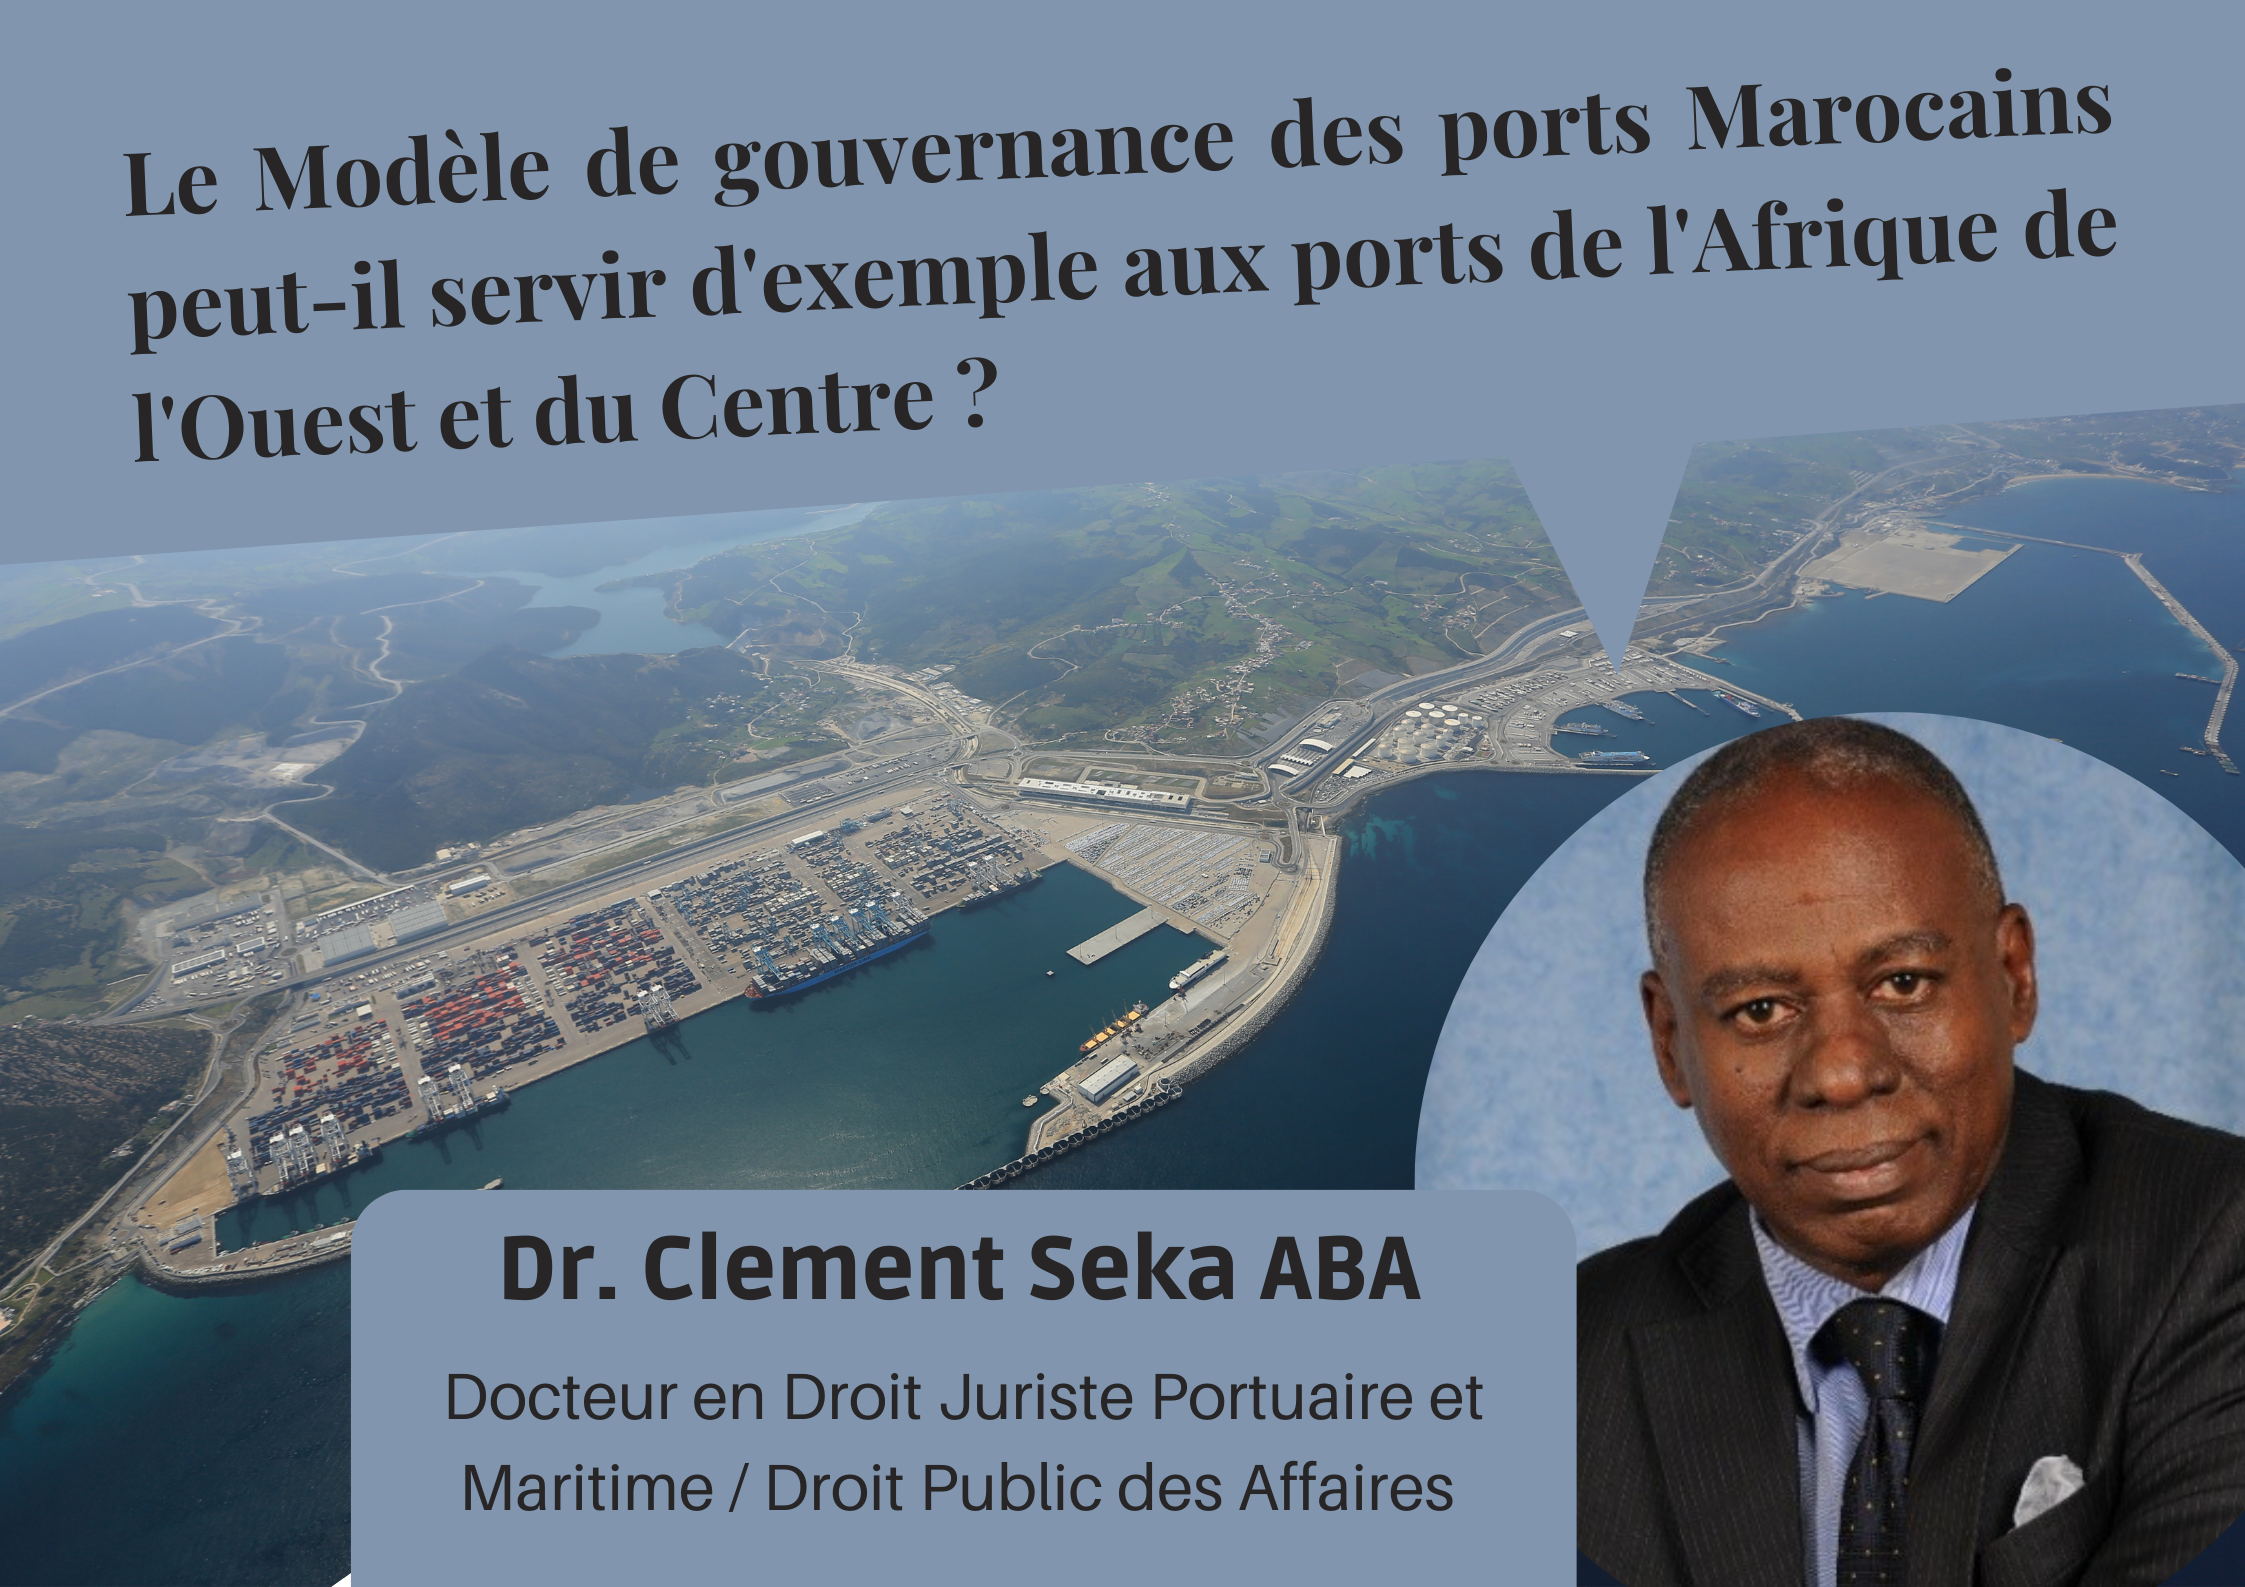 Le Modèle de gouvernance des ports Marocains peut-il servir d’exemple aux ports de l’Afrique de l’Ouest et du Centre ?